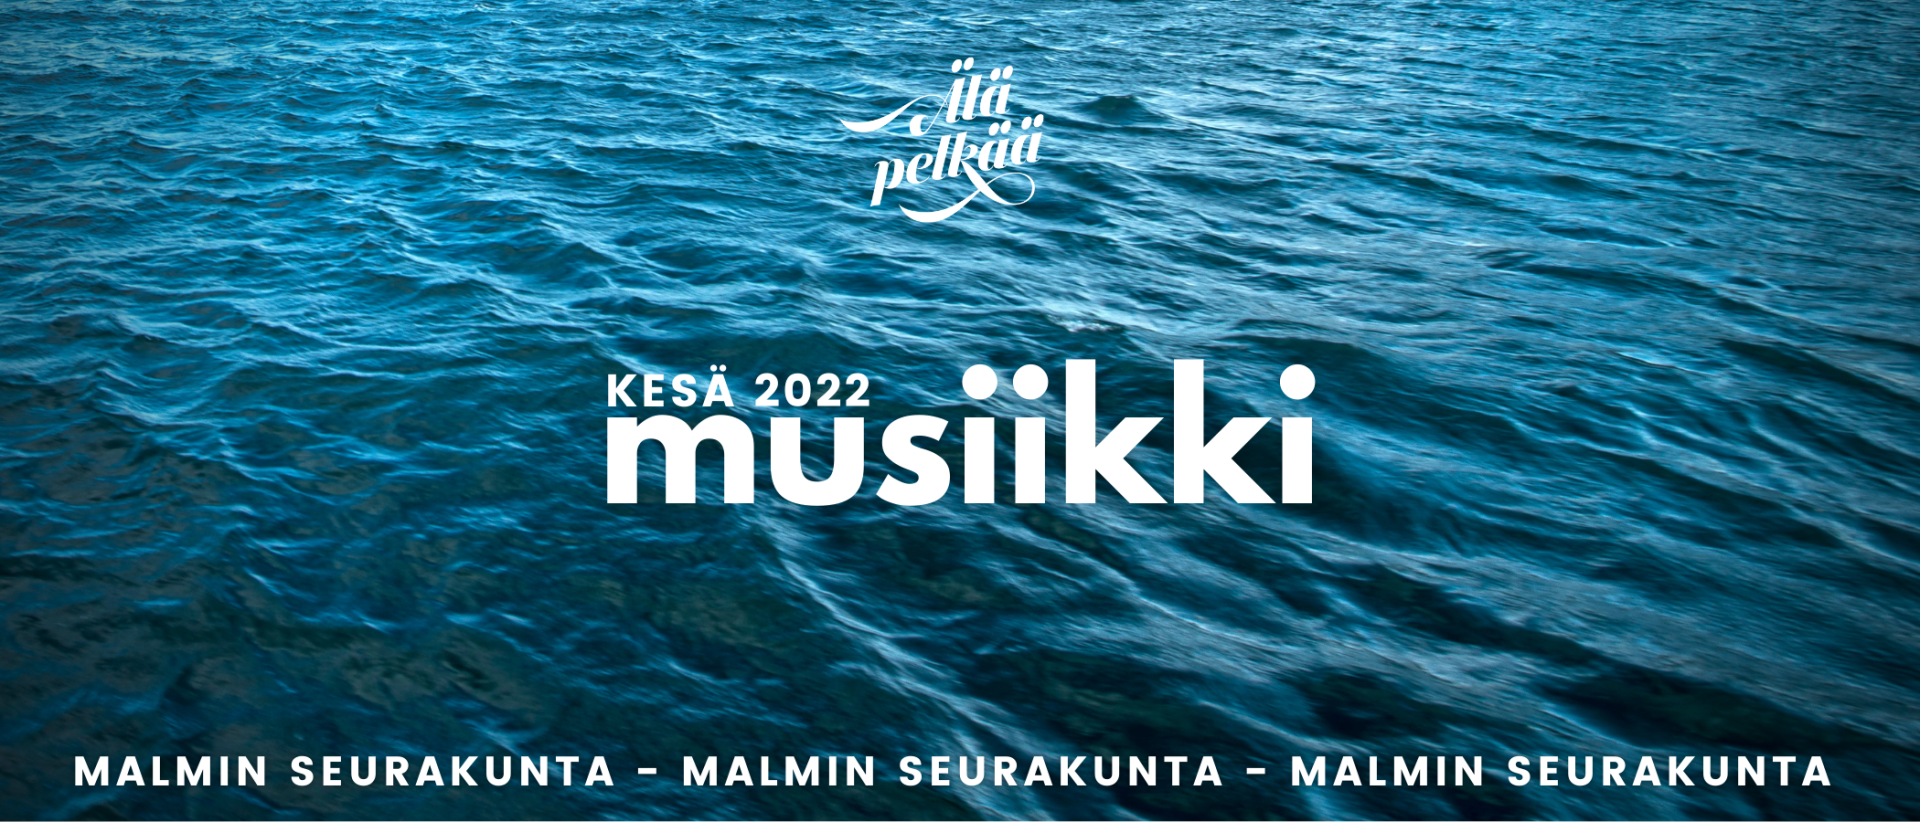 Sininen järvi auringossa, teksti: Malmin seurakunnan kesä 2022 musiikki, älä pelkää.